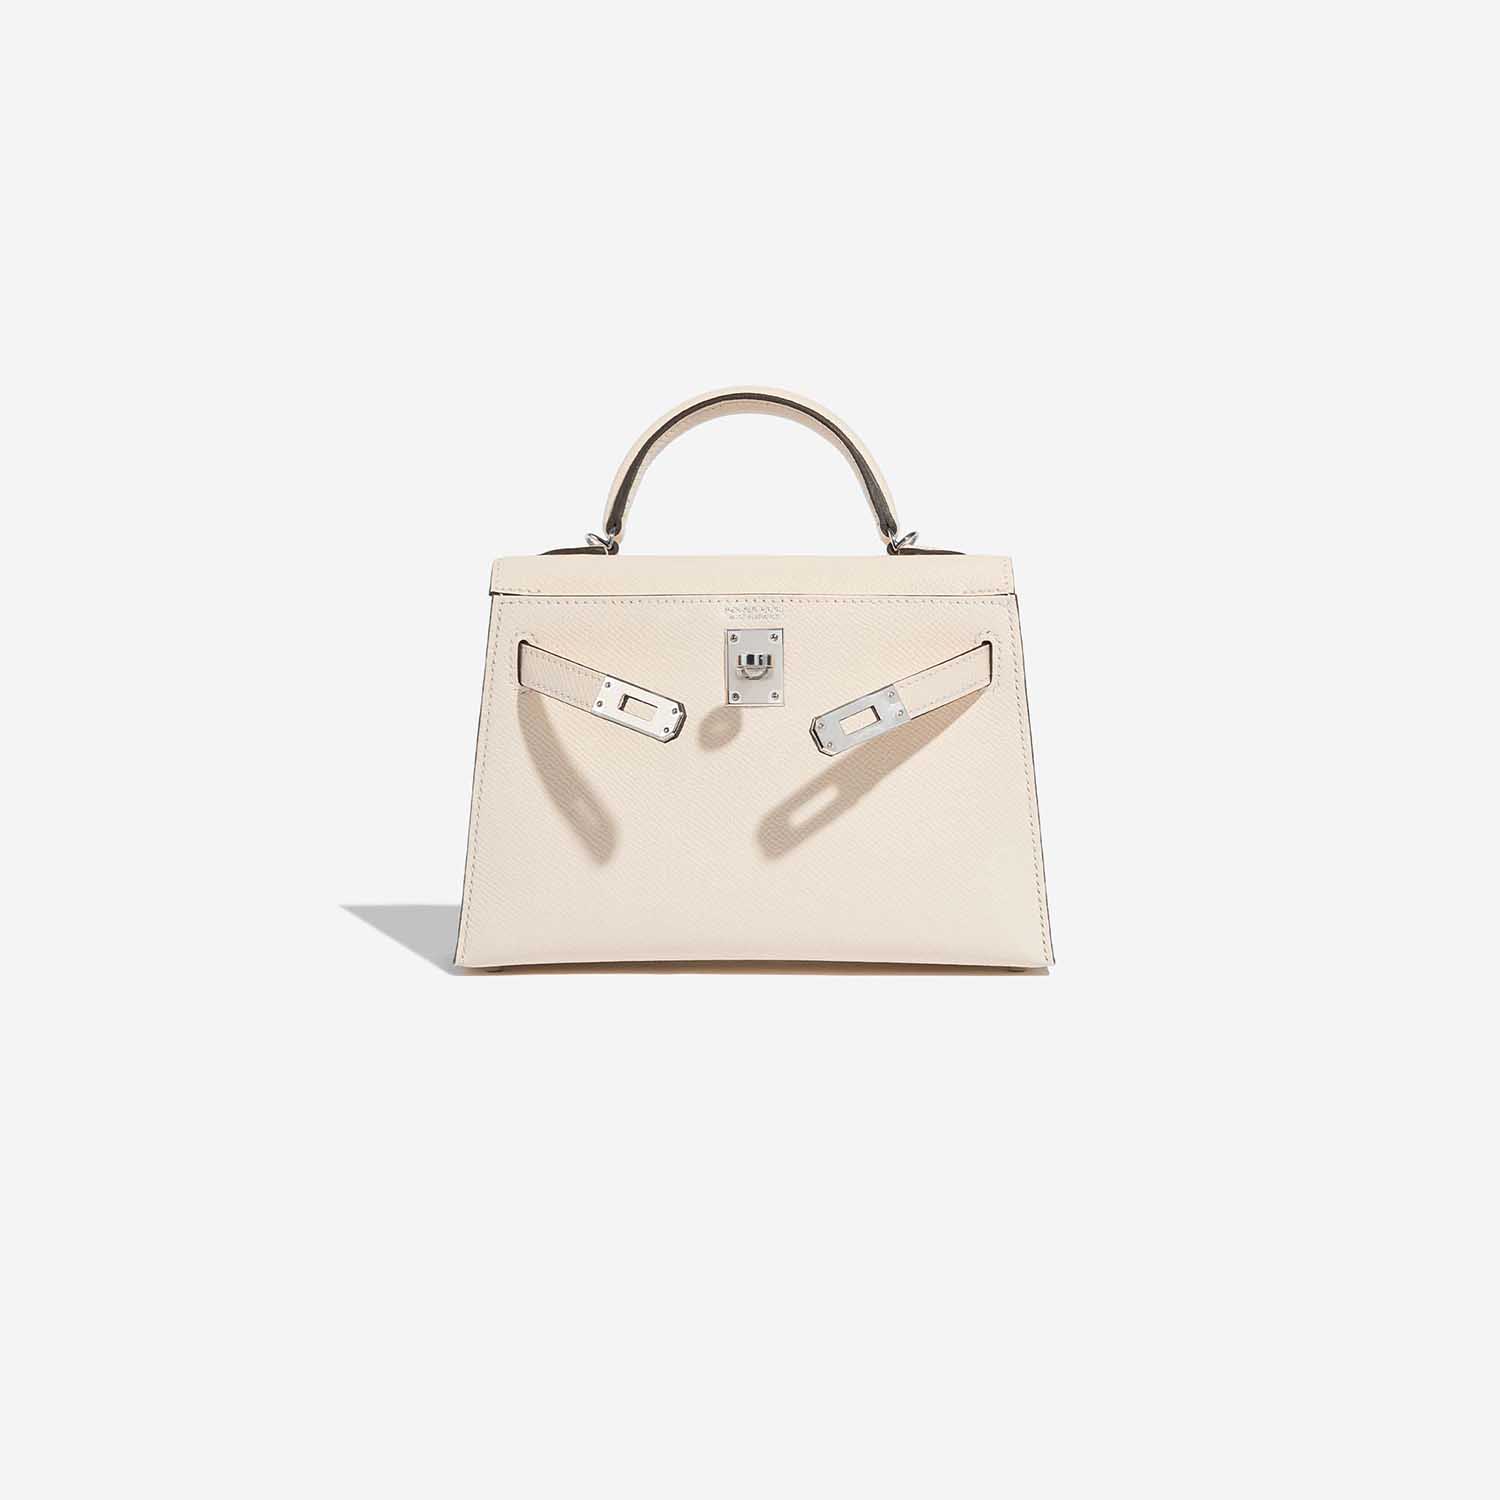 Pre-owned Hermès Tasche Kelly Mini Epsom Nata Beige Front Open | Verkaufen Sie Ihre Designer-Tasche auf Saclab.com